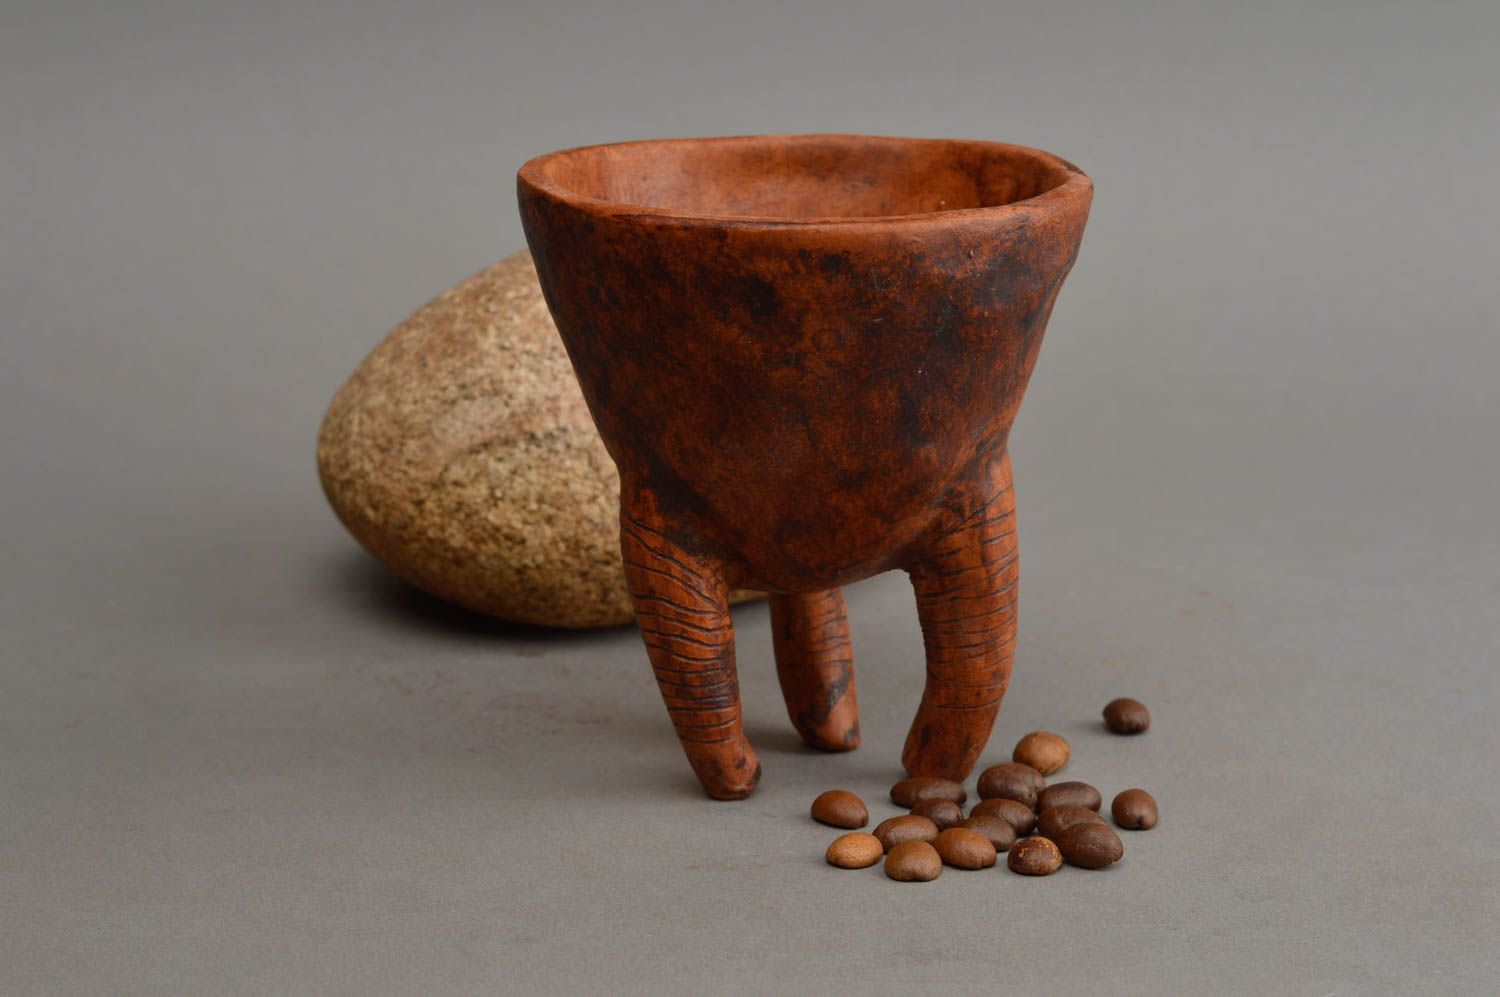 Ceramic handmade bowl unusual utensils made of clay stylish kitchenware photo 1